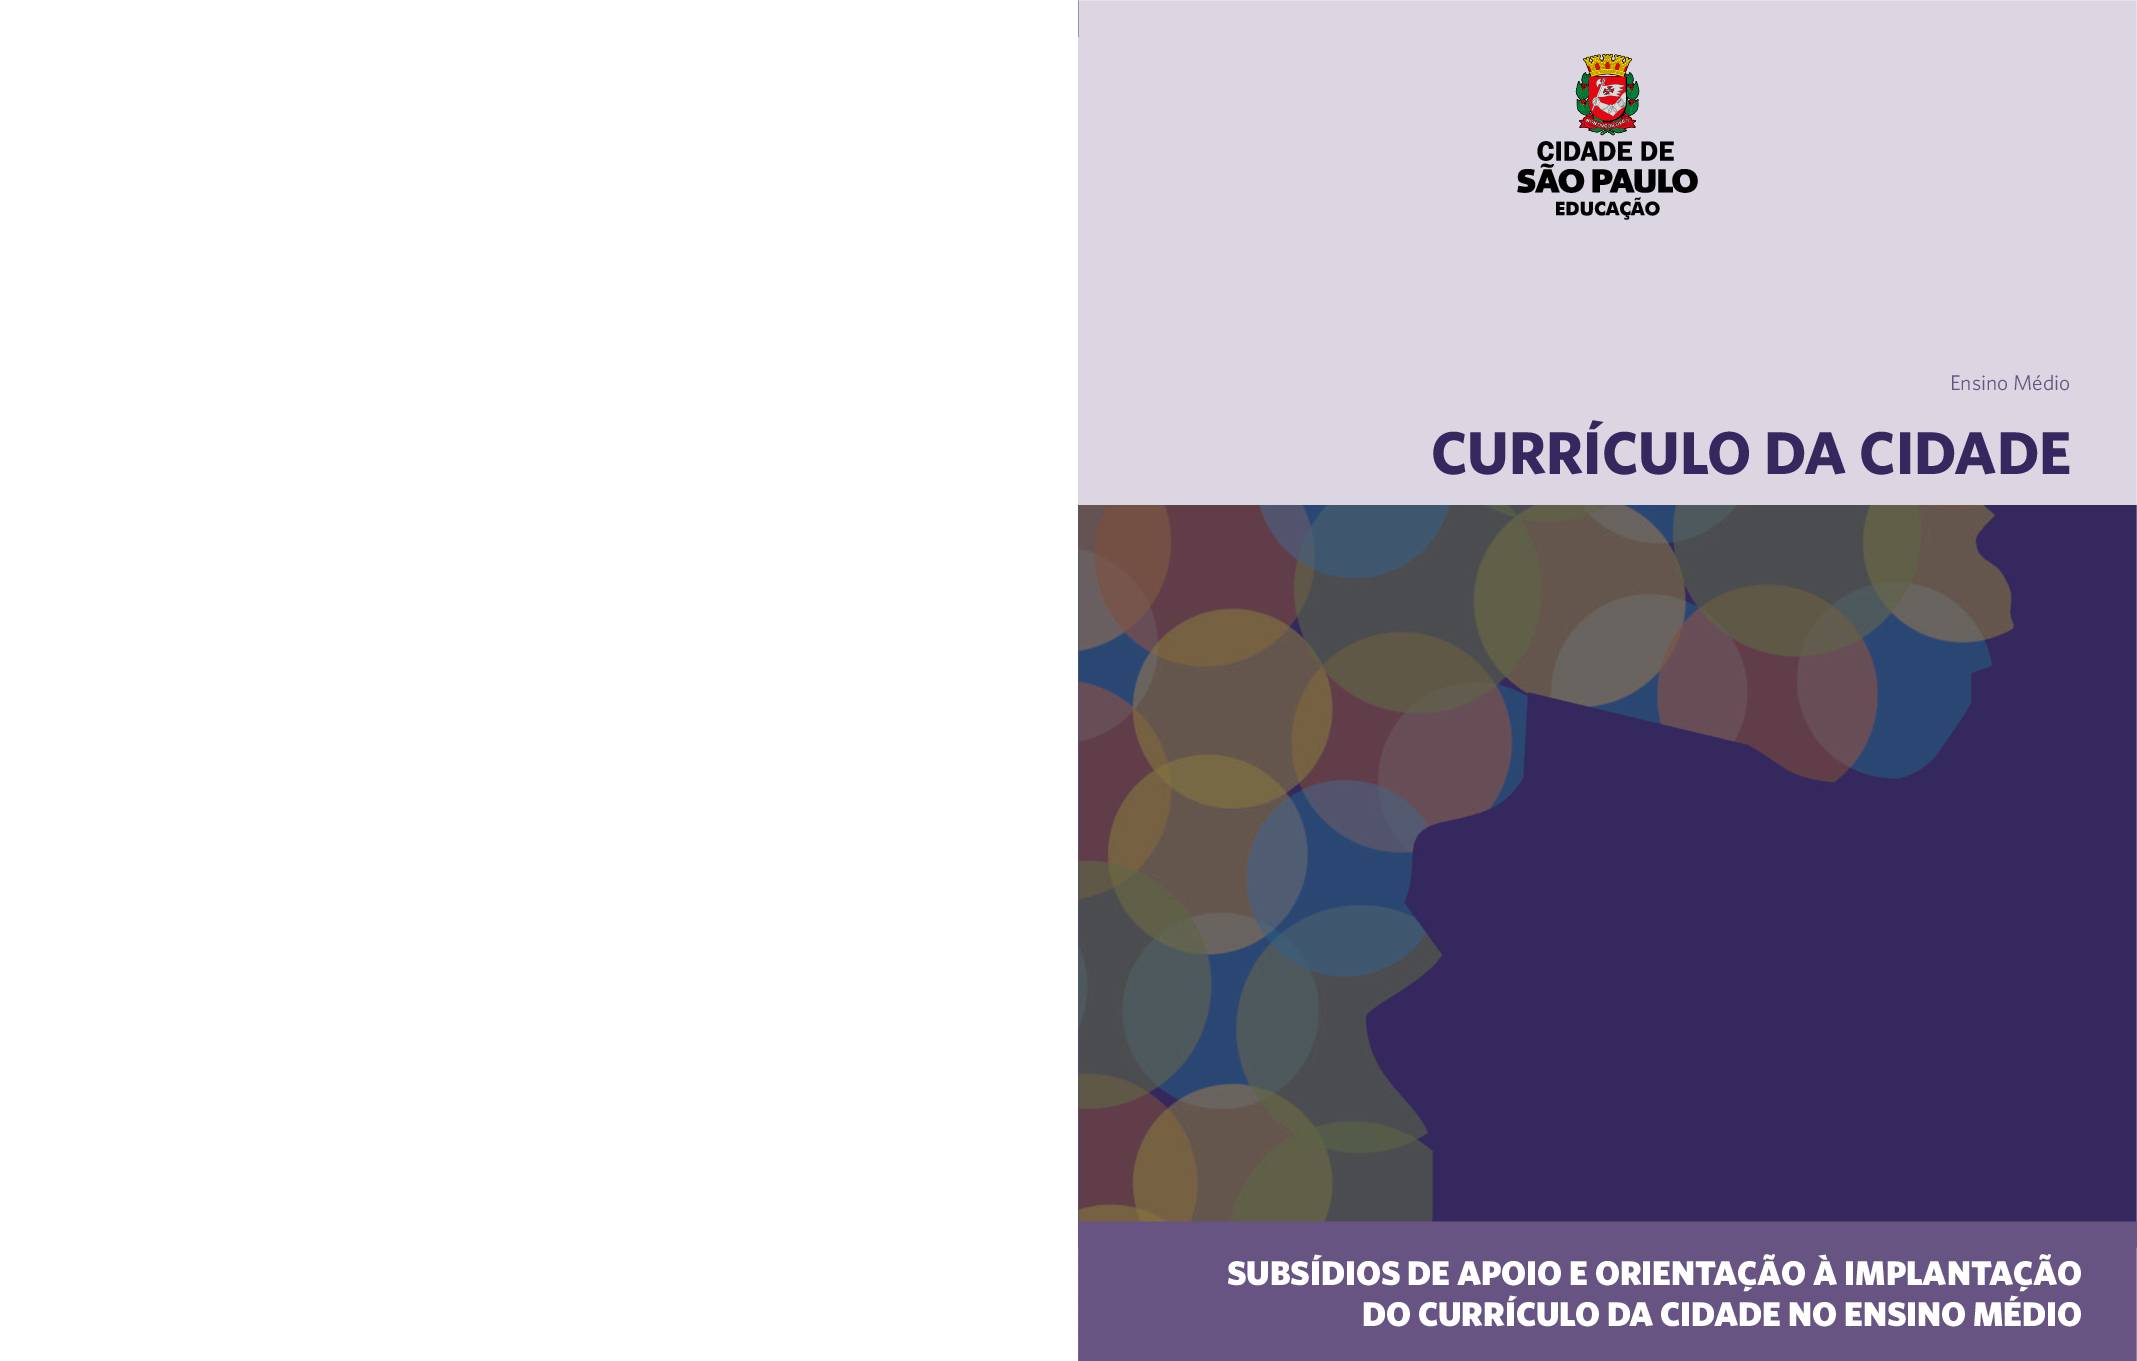 Publicação com subsídios de apoio e orientação à implantação do Currículo da Cidade para o Ensino Médio.